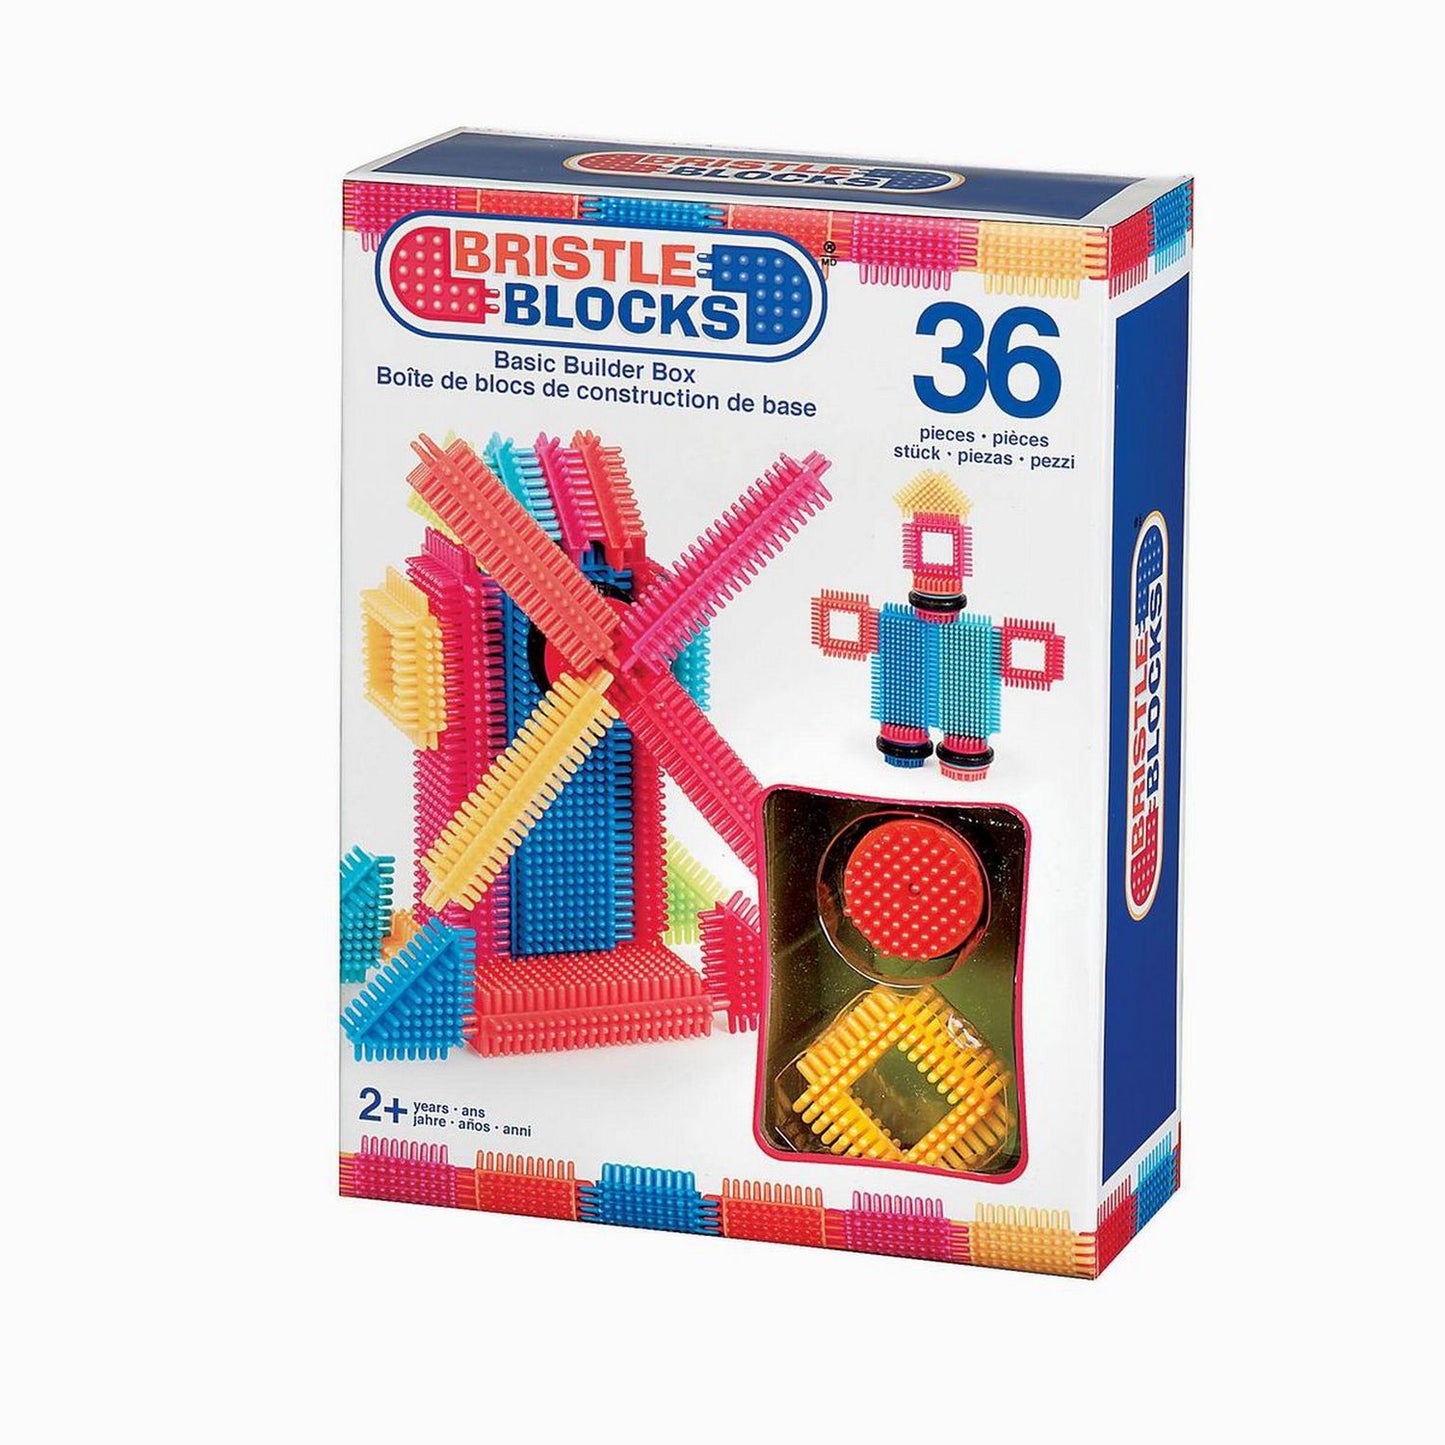 Bristle Blocks Confezione 36 blocchi Battat